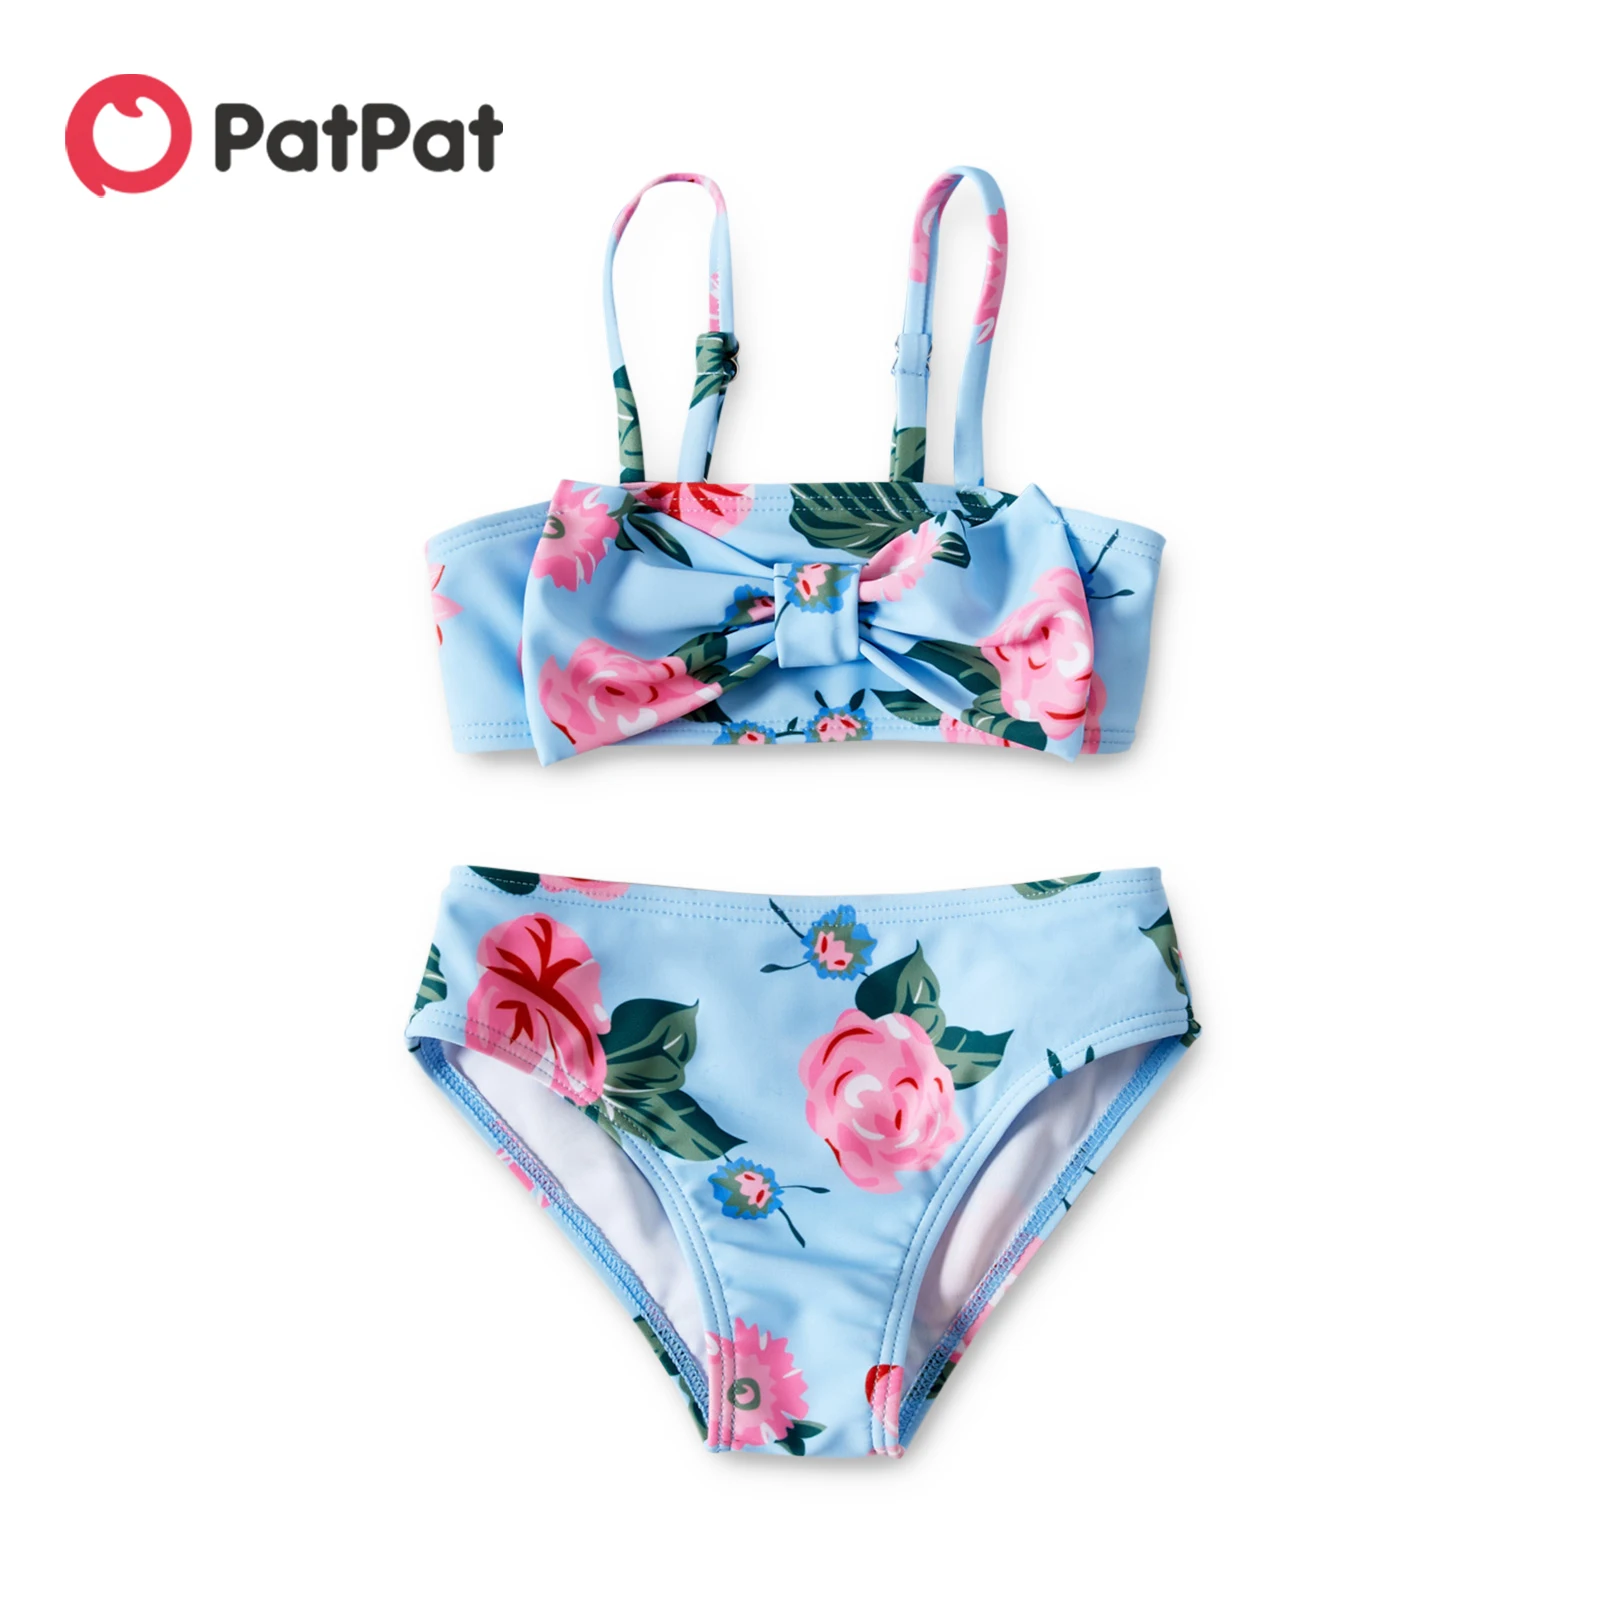 

PatPat 2pcs Baby Girl Swimsuit Floral Print Bowknot Summer More Festivals Swimwear for Children Girl